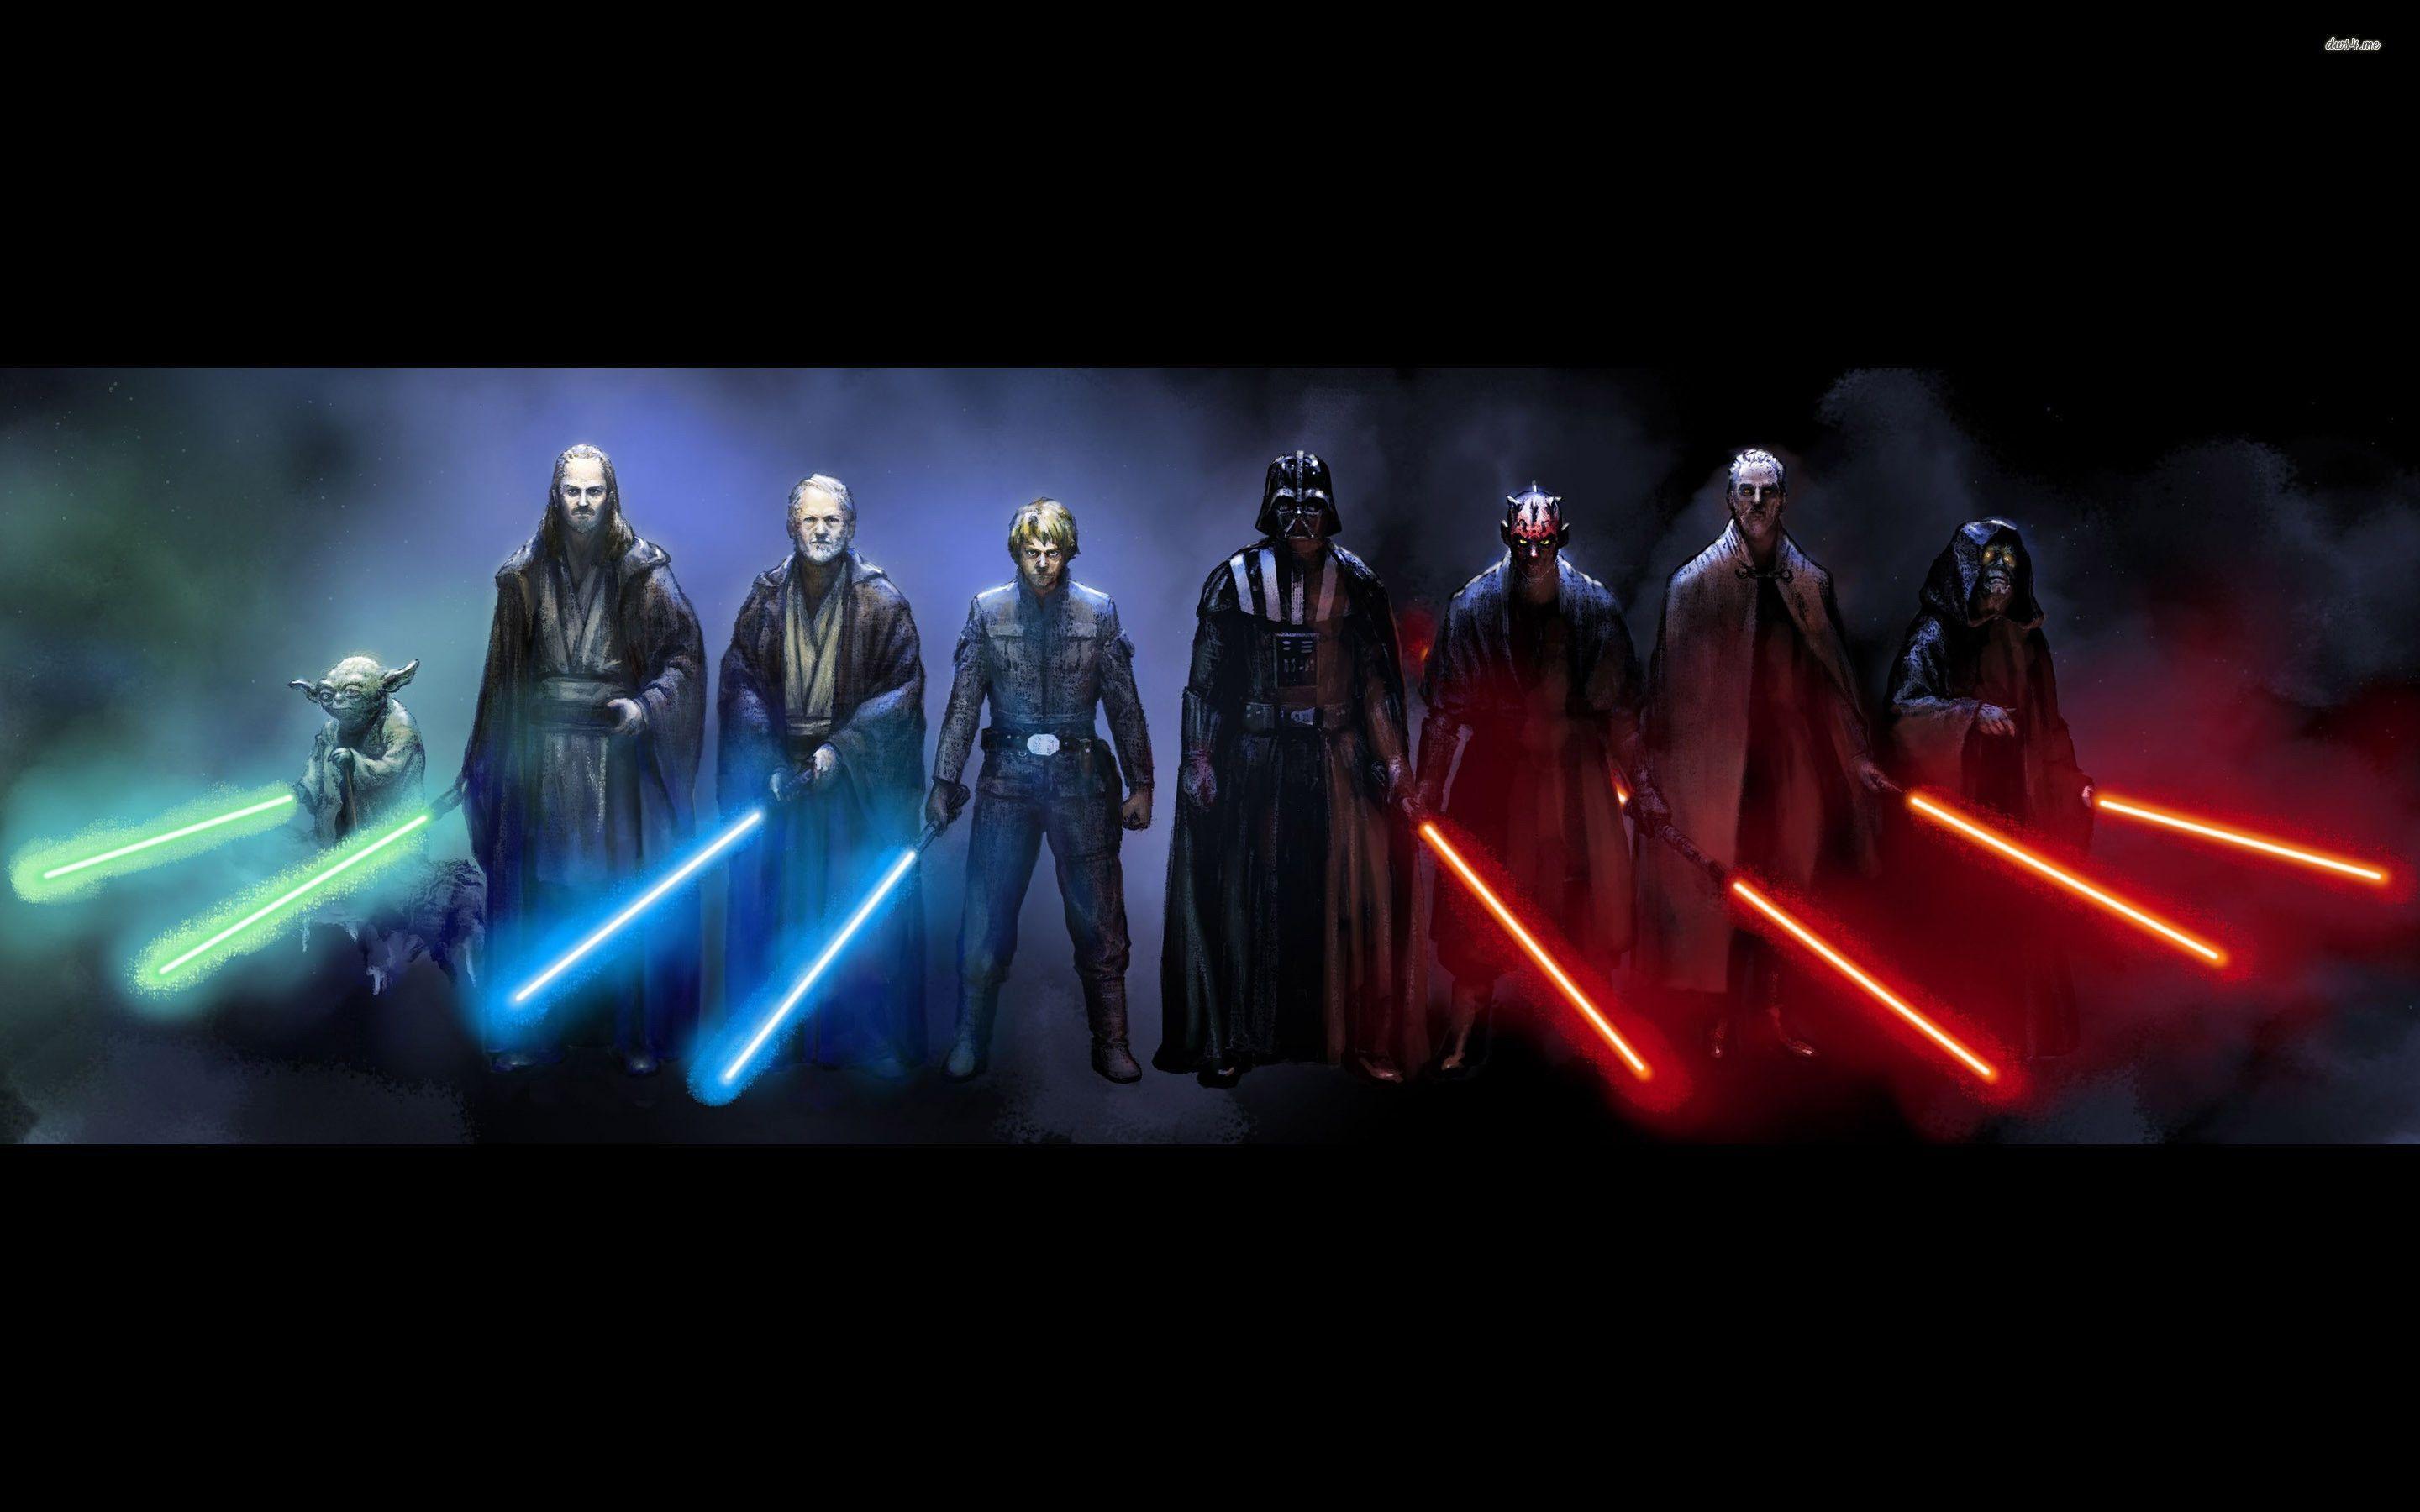 Star Wars Jedi Wallpaper